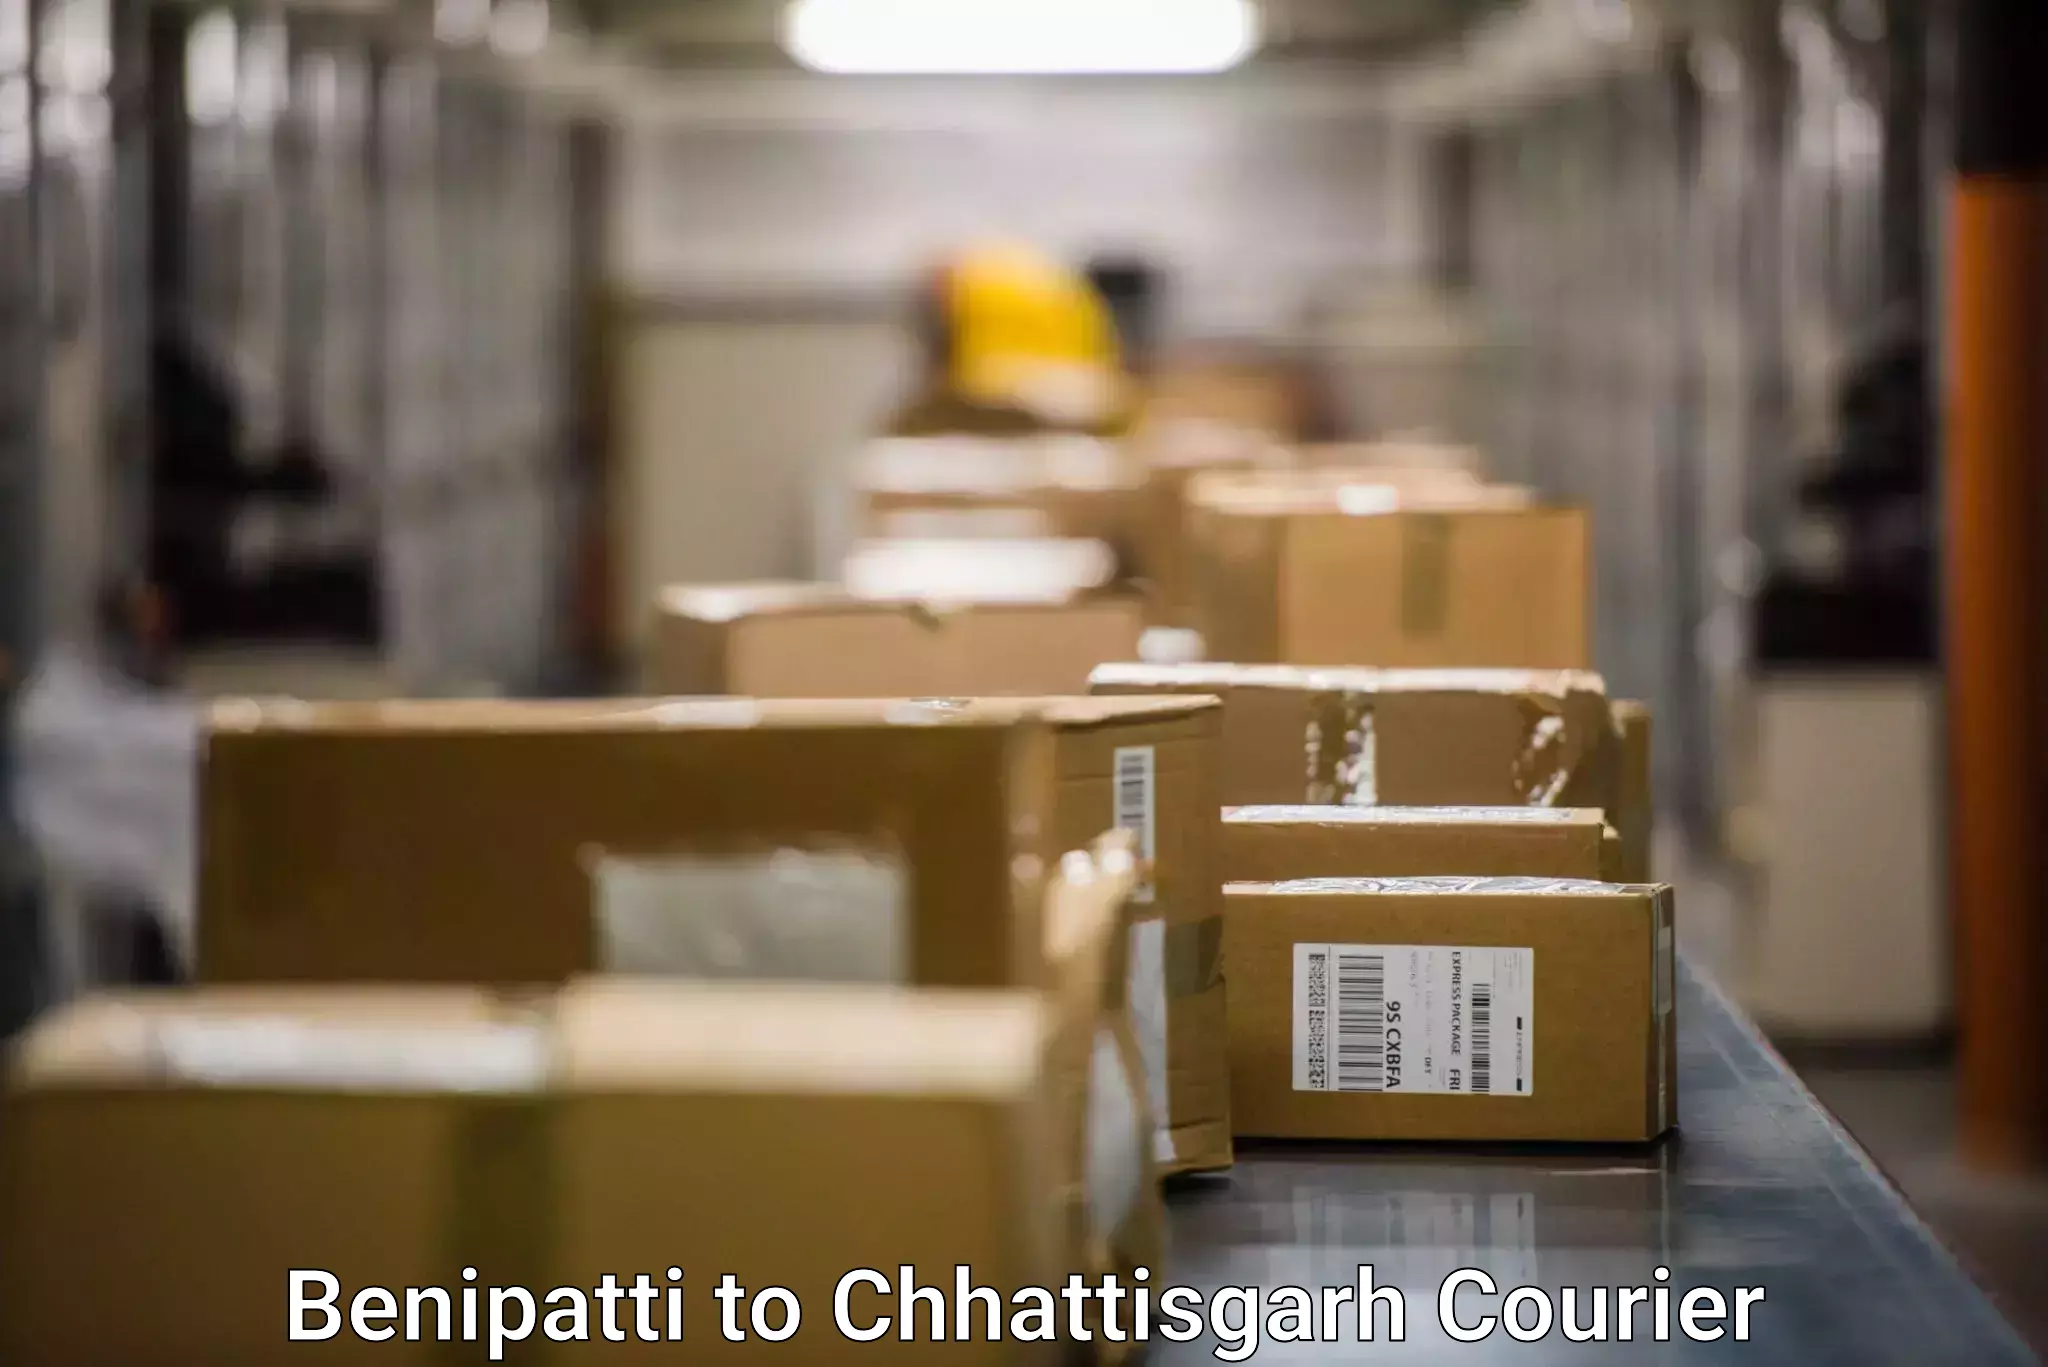 Corporate courier solutions Benipatti to Chhattisgarh